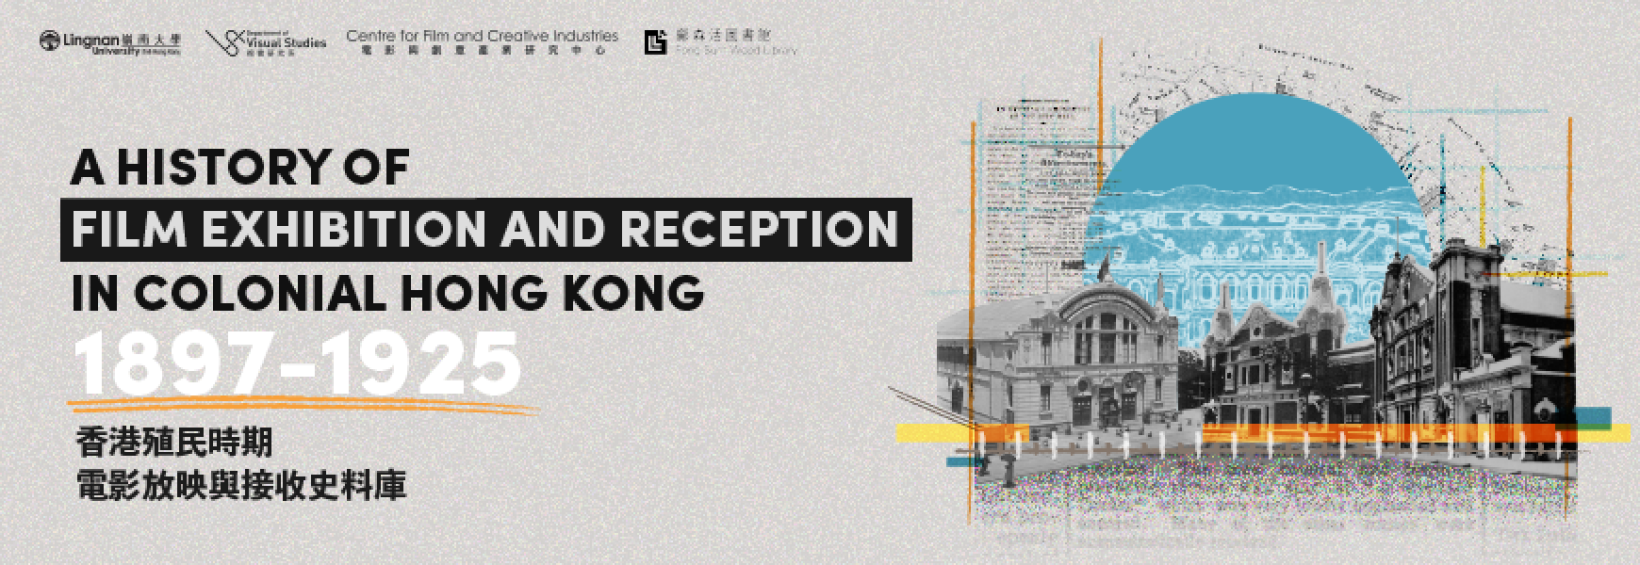 嶺大推出「香港殖民時期電影放映與接收史料庫」